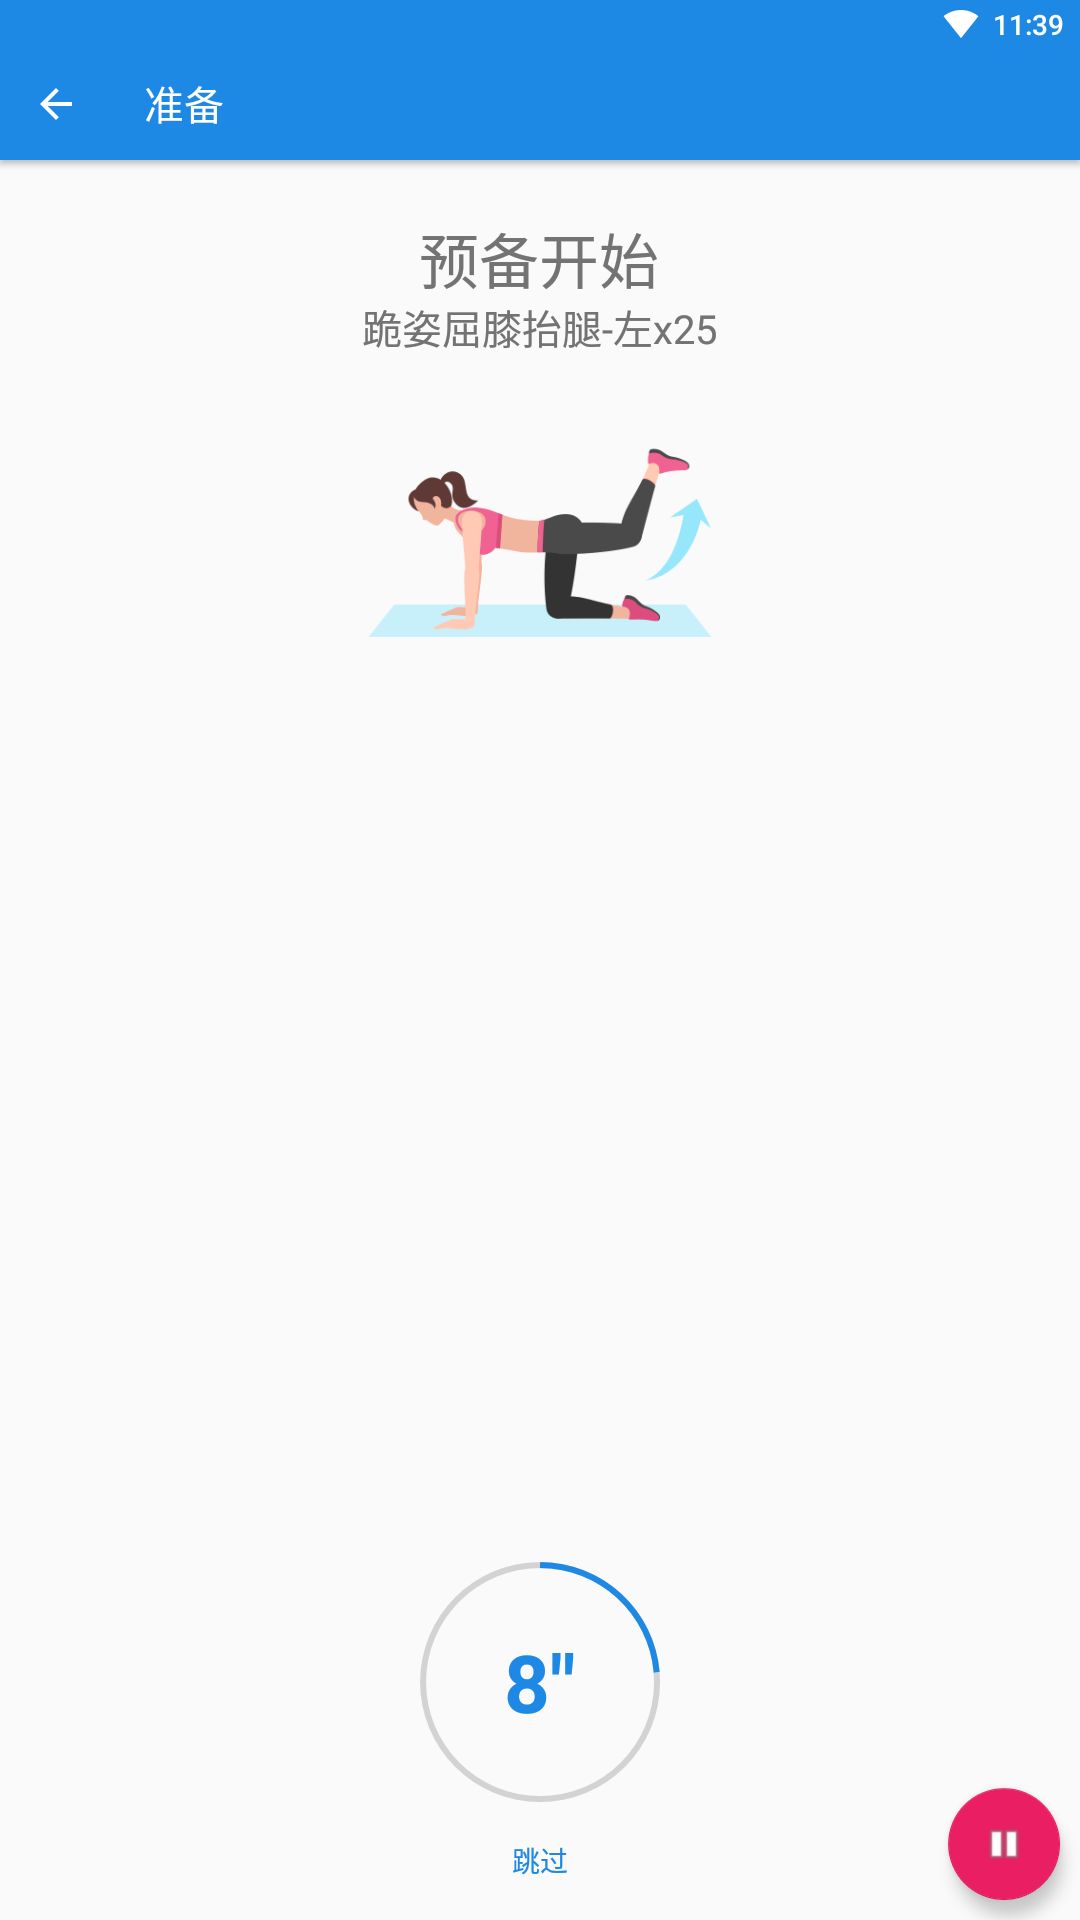 凯越瑜伽体育健身app图1